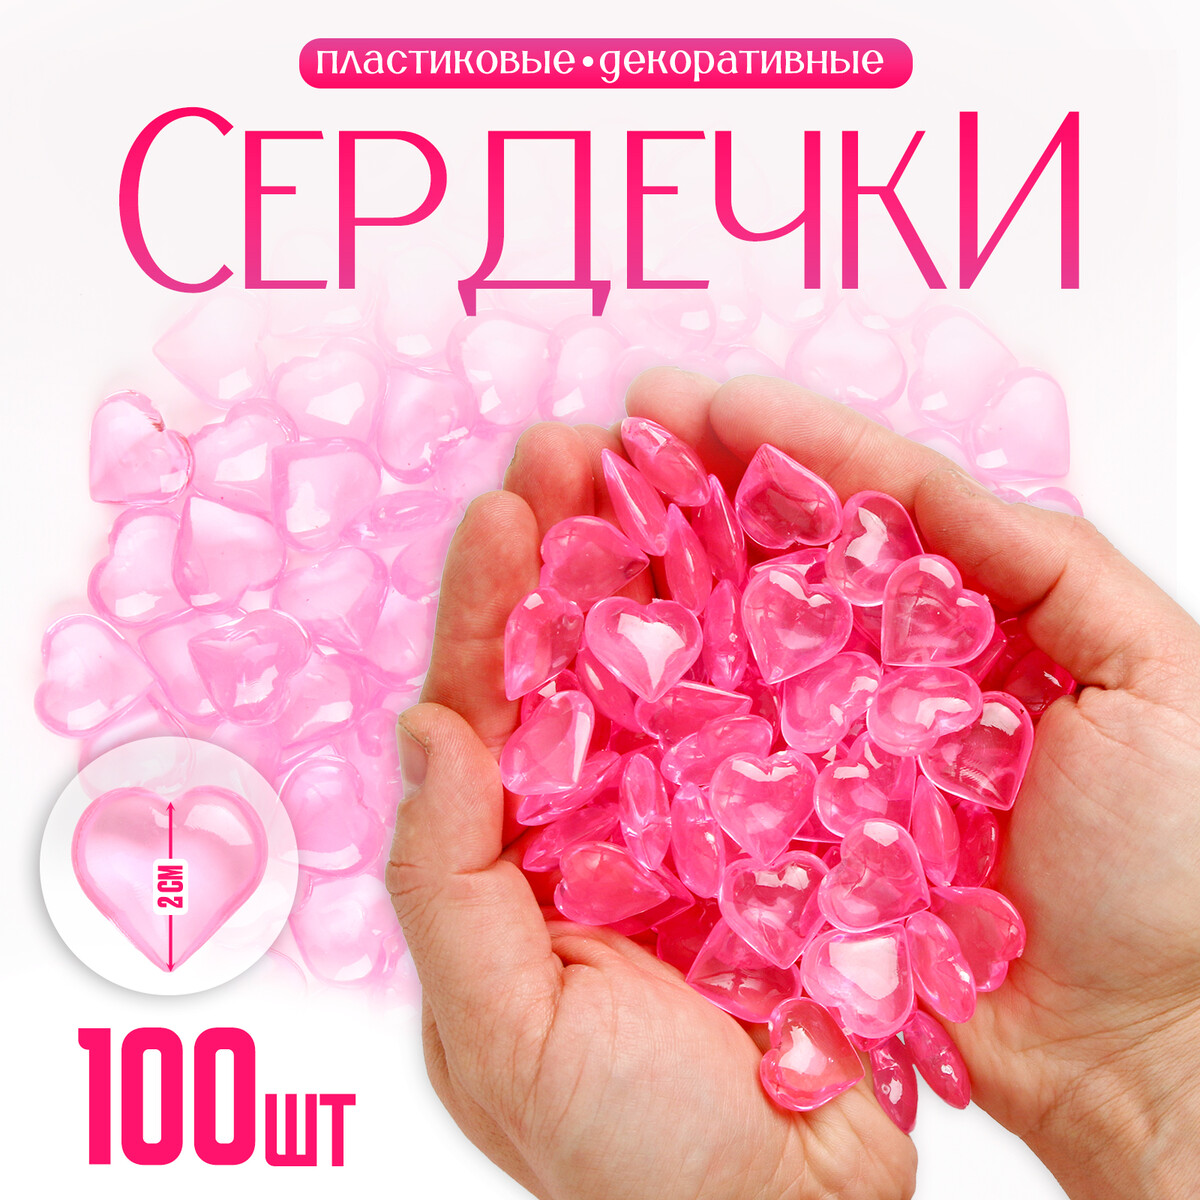 Сердечки пластиковые декоративные, набор 100 шт., размер 1 шт. — 2 × 2 см, цвет розовый ягоды декоративные на вставке 14 см азалия розовый